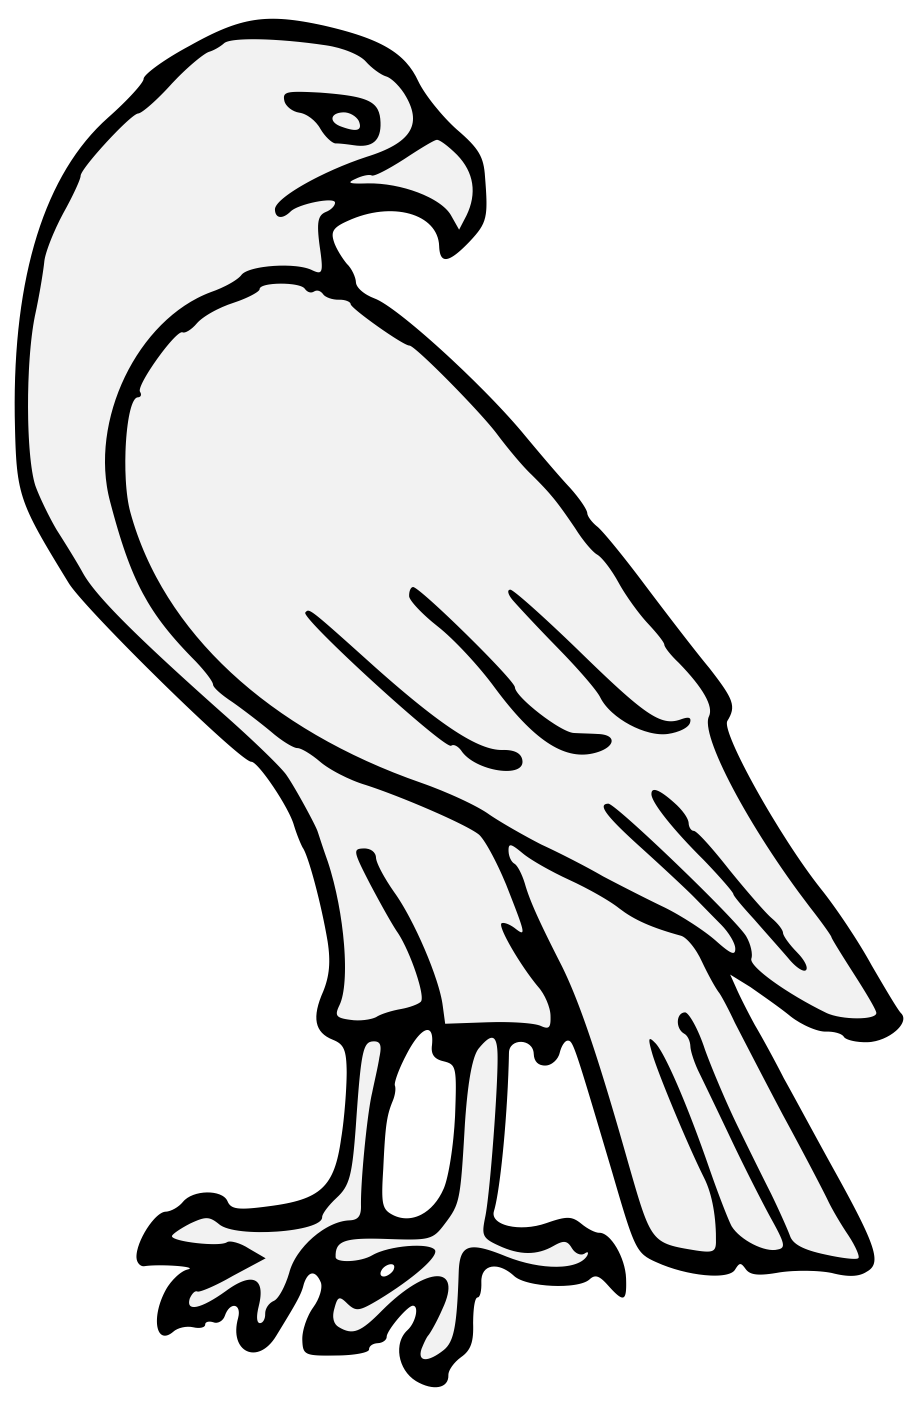 Falcon clipart svg. Traceable heraldic art details